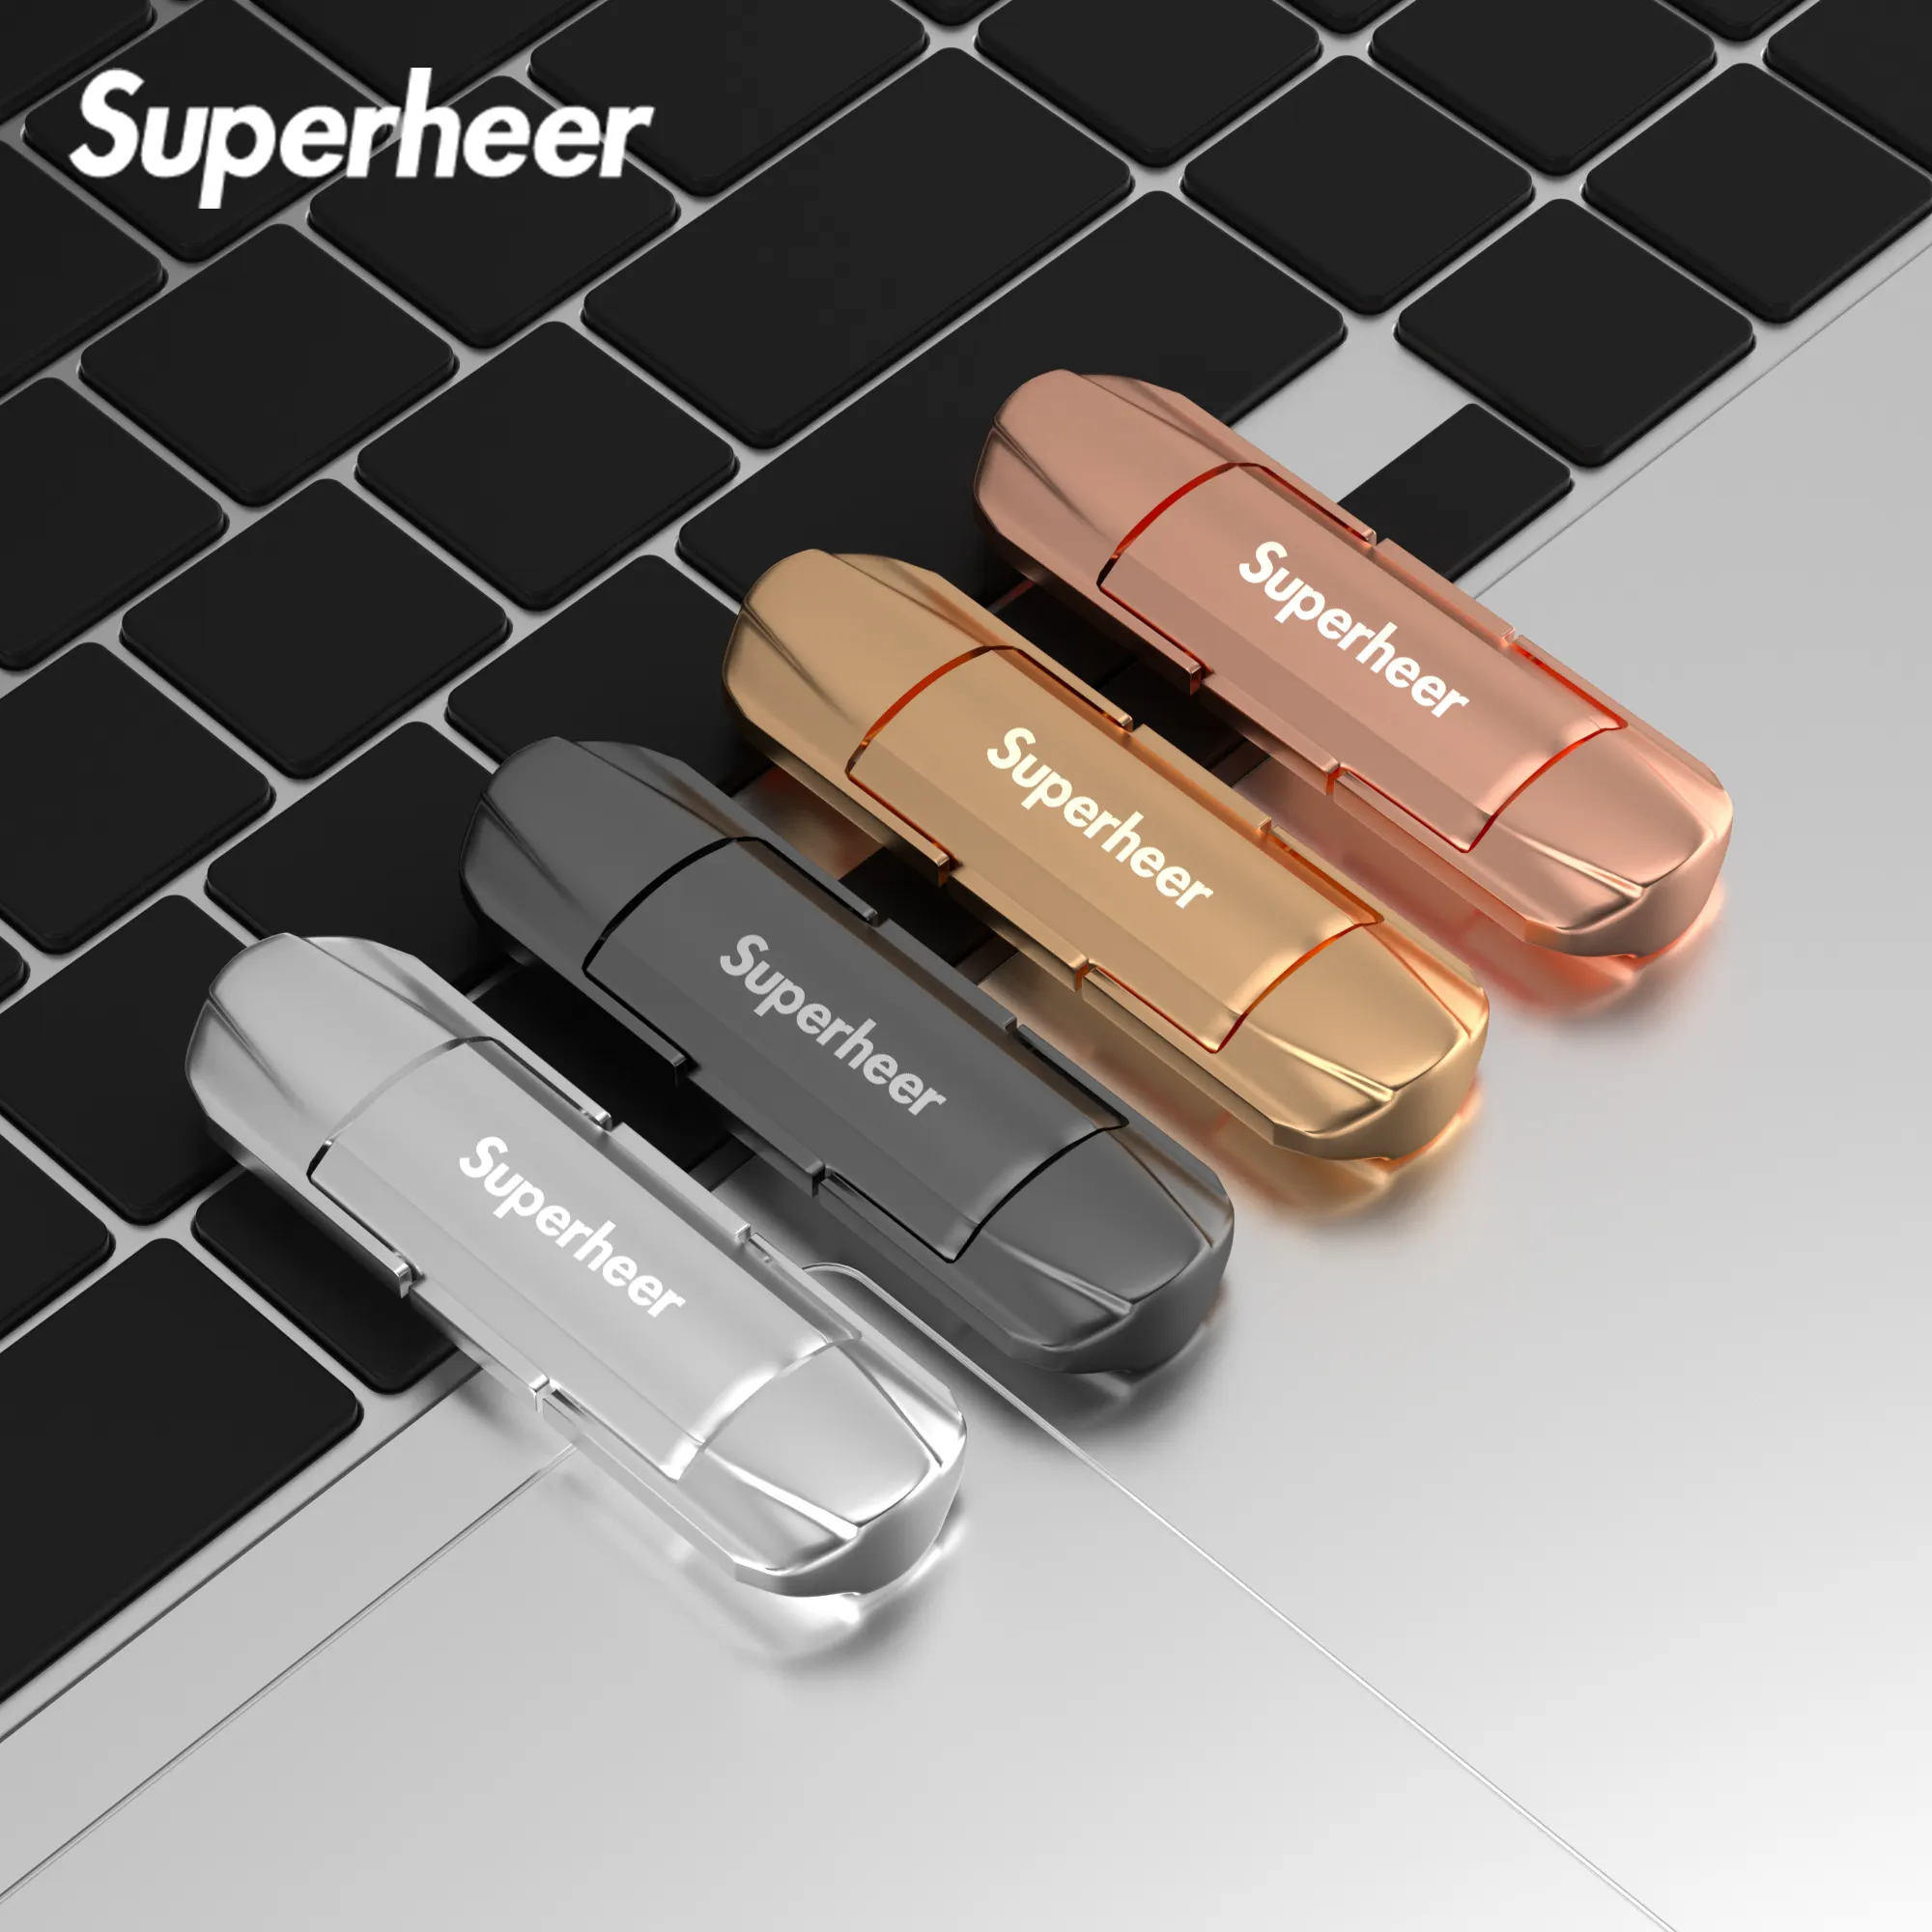 Superheer New Design SSD Usb 3.0 Metal Swivel Usb Flash Drive With Box 1Tb Flash Drive Usb 3.0 Stick